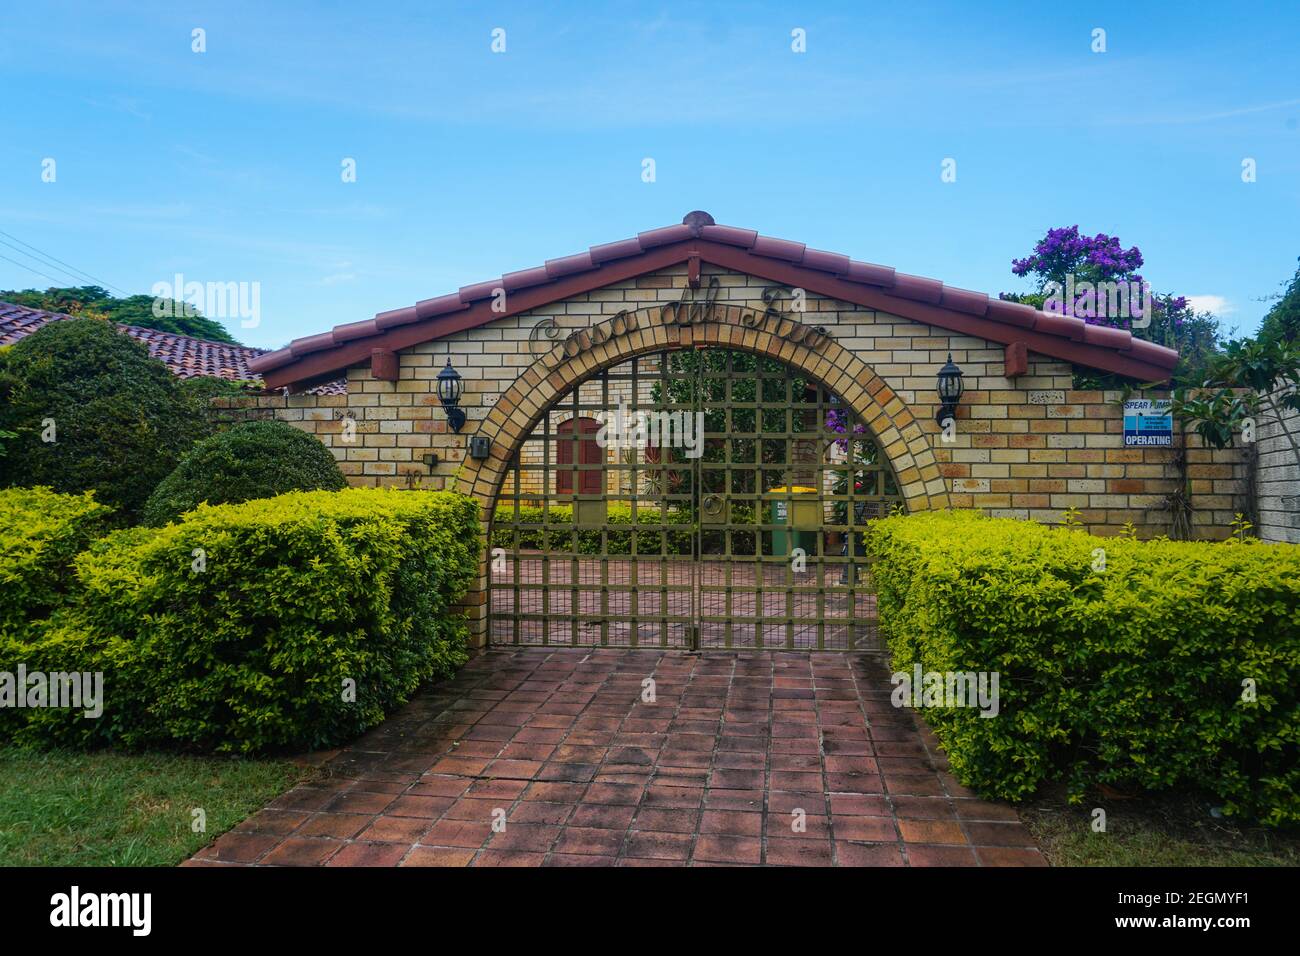 Eingang zur Villa in Gold Coast Queensland Australien Stock Photo Stock Bilder Stock Bilder Stockfoto